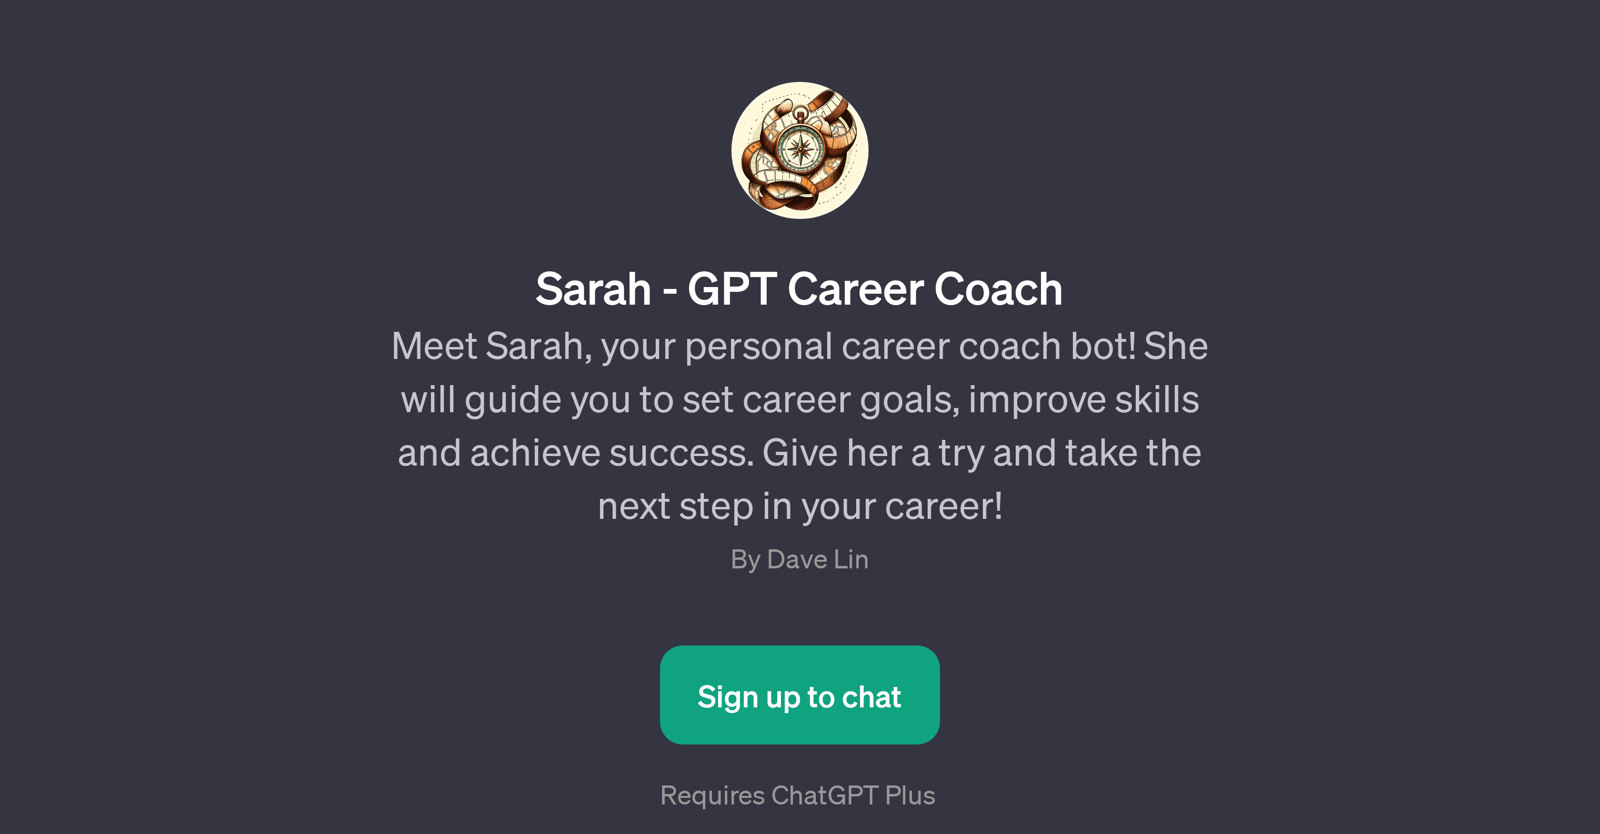 Sarah - GPT Career Coach website